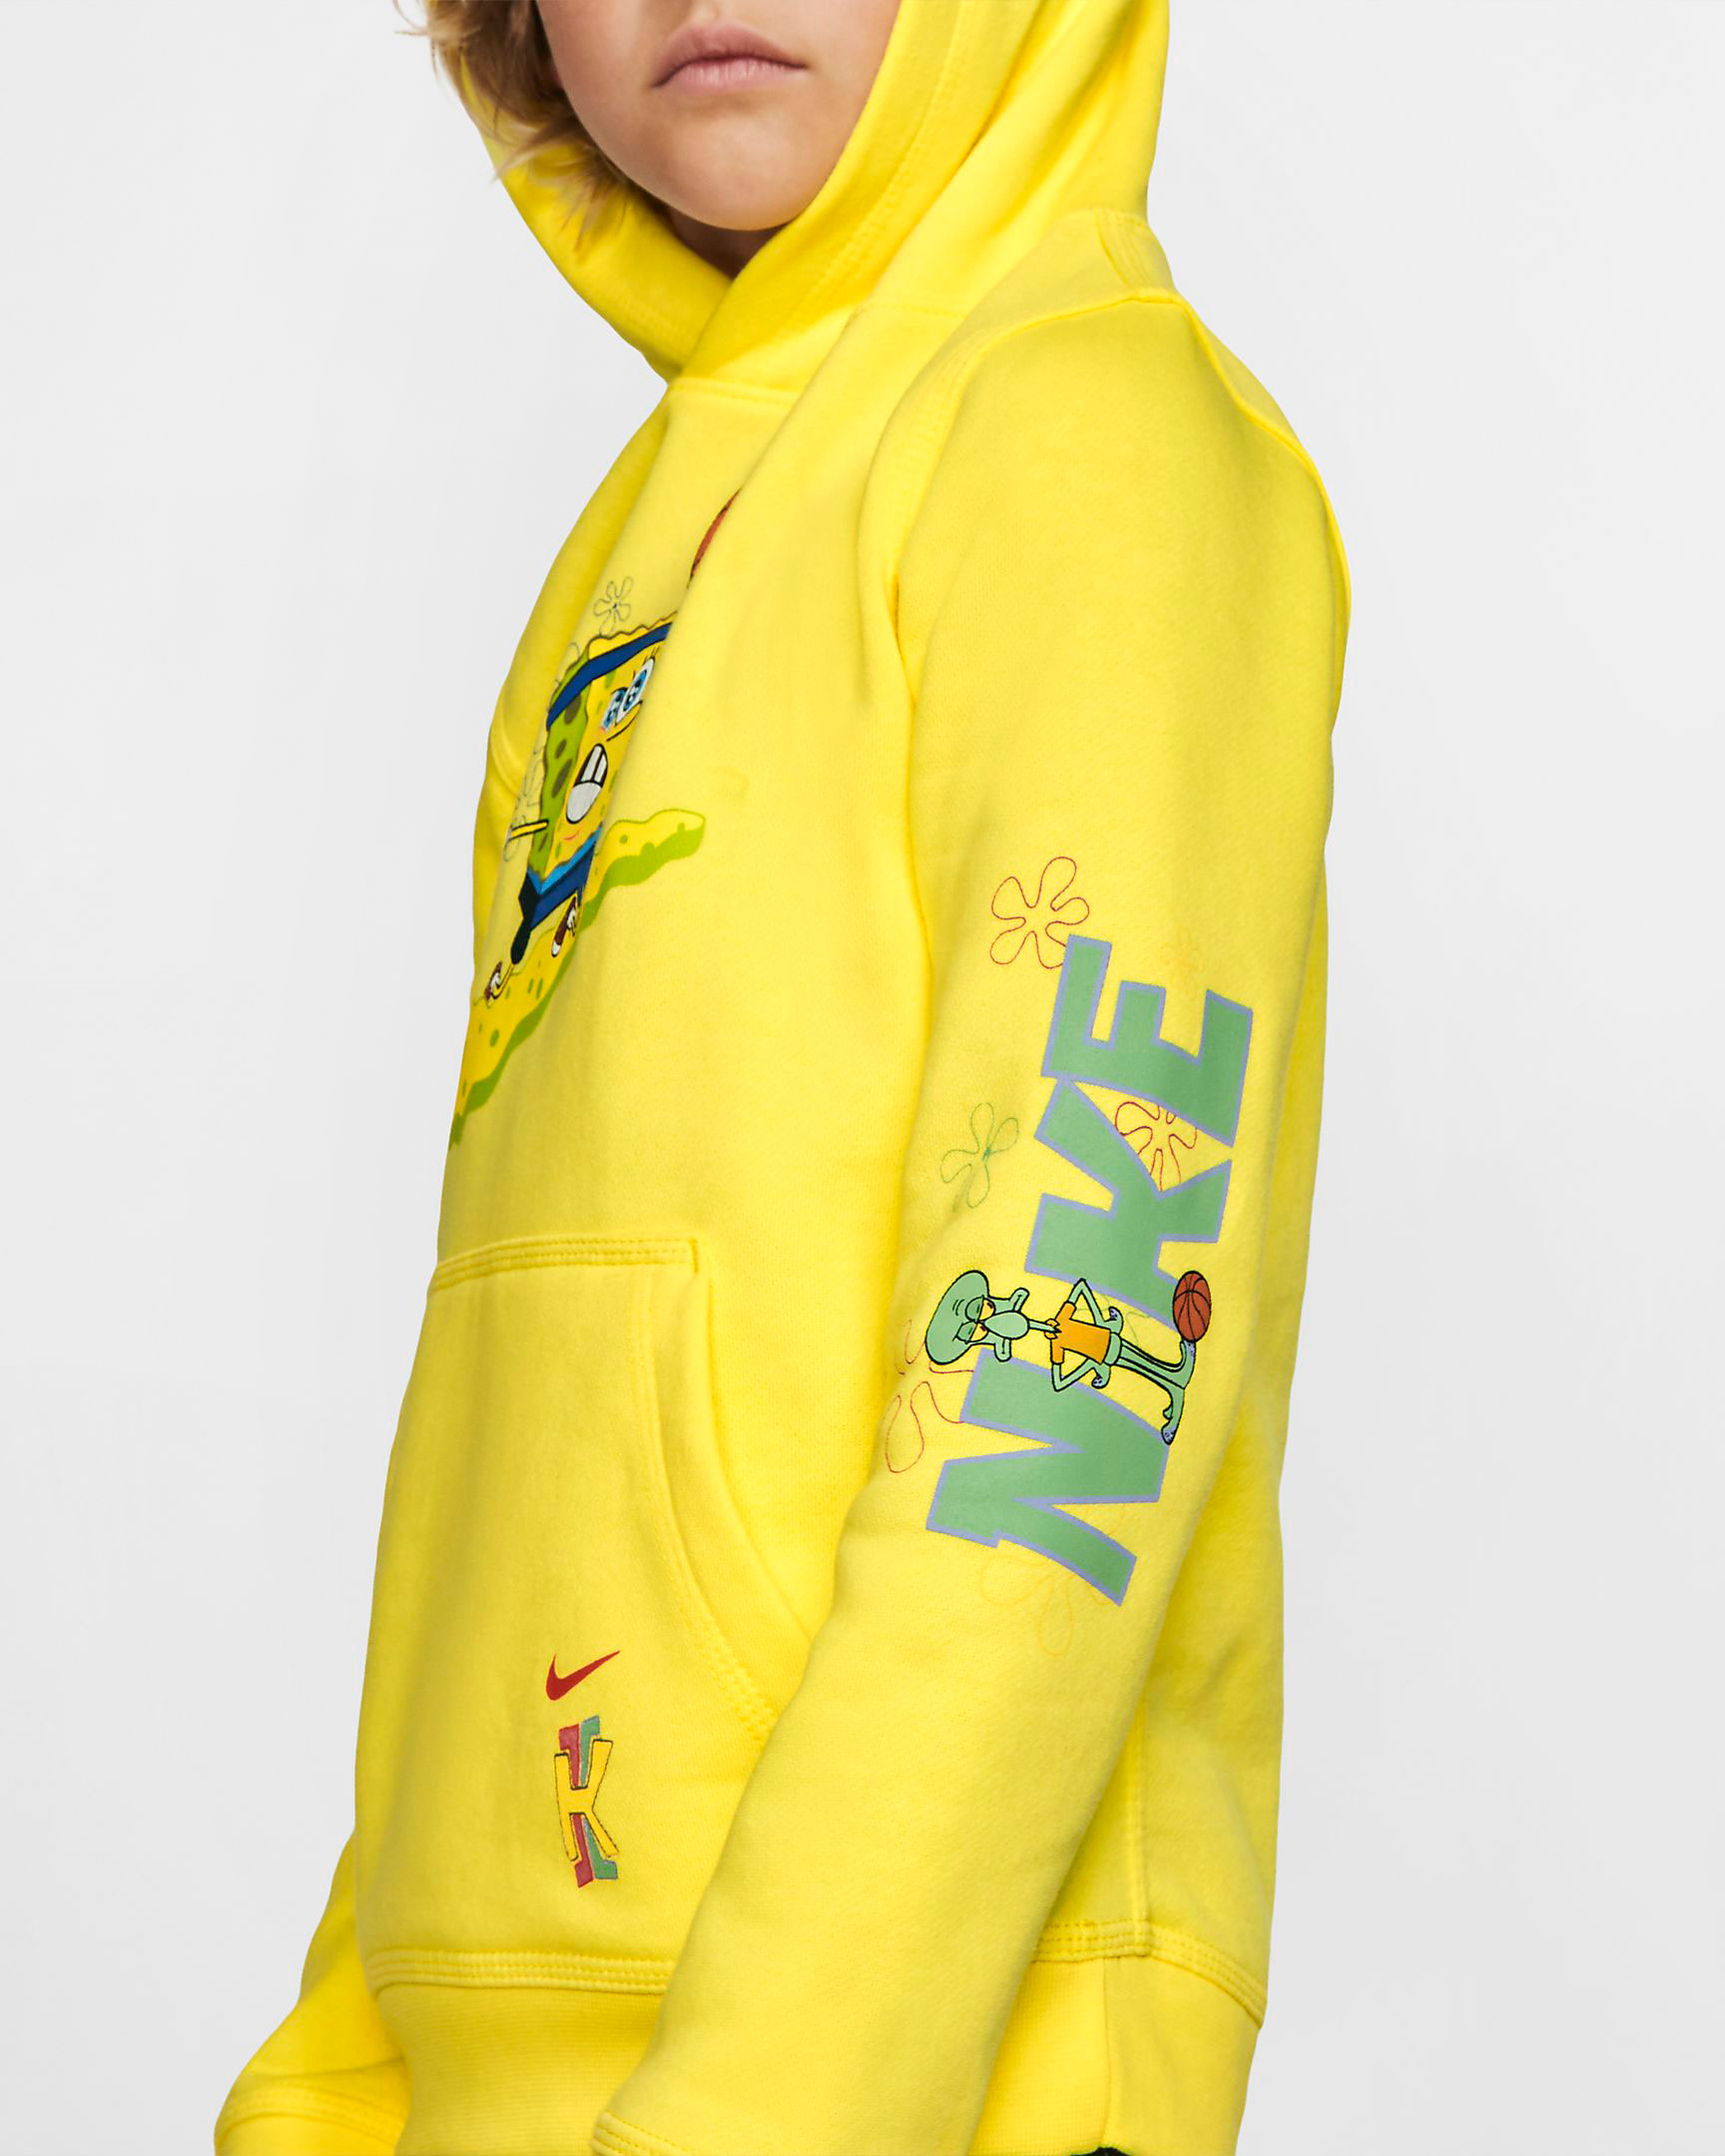 kyrie spongebob hoodie youth